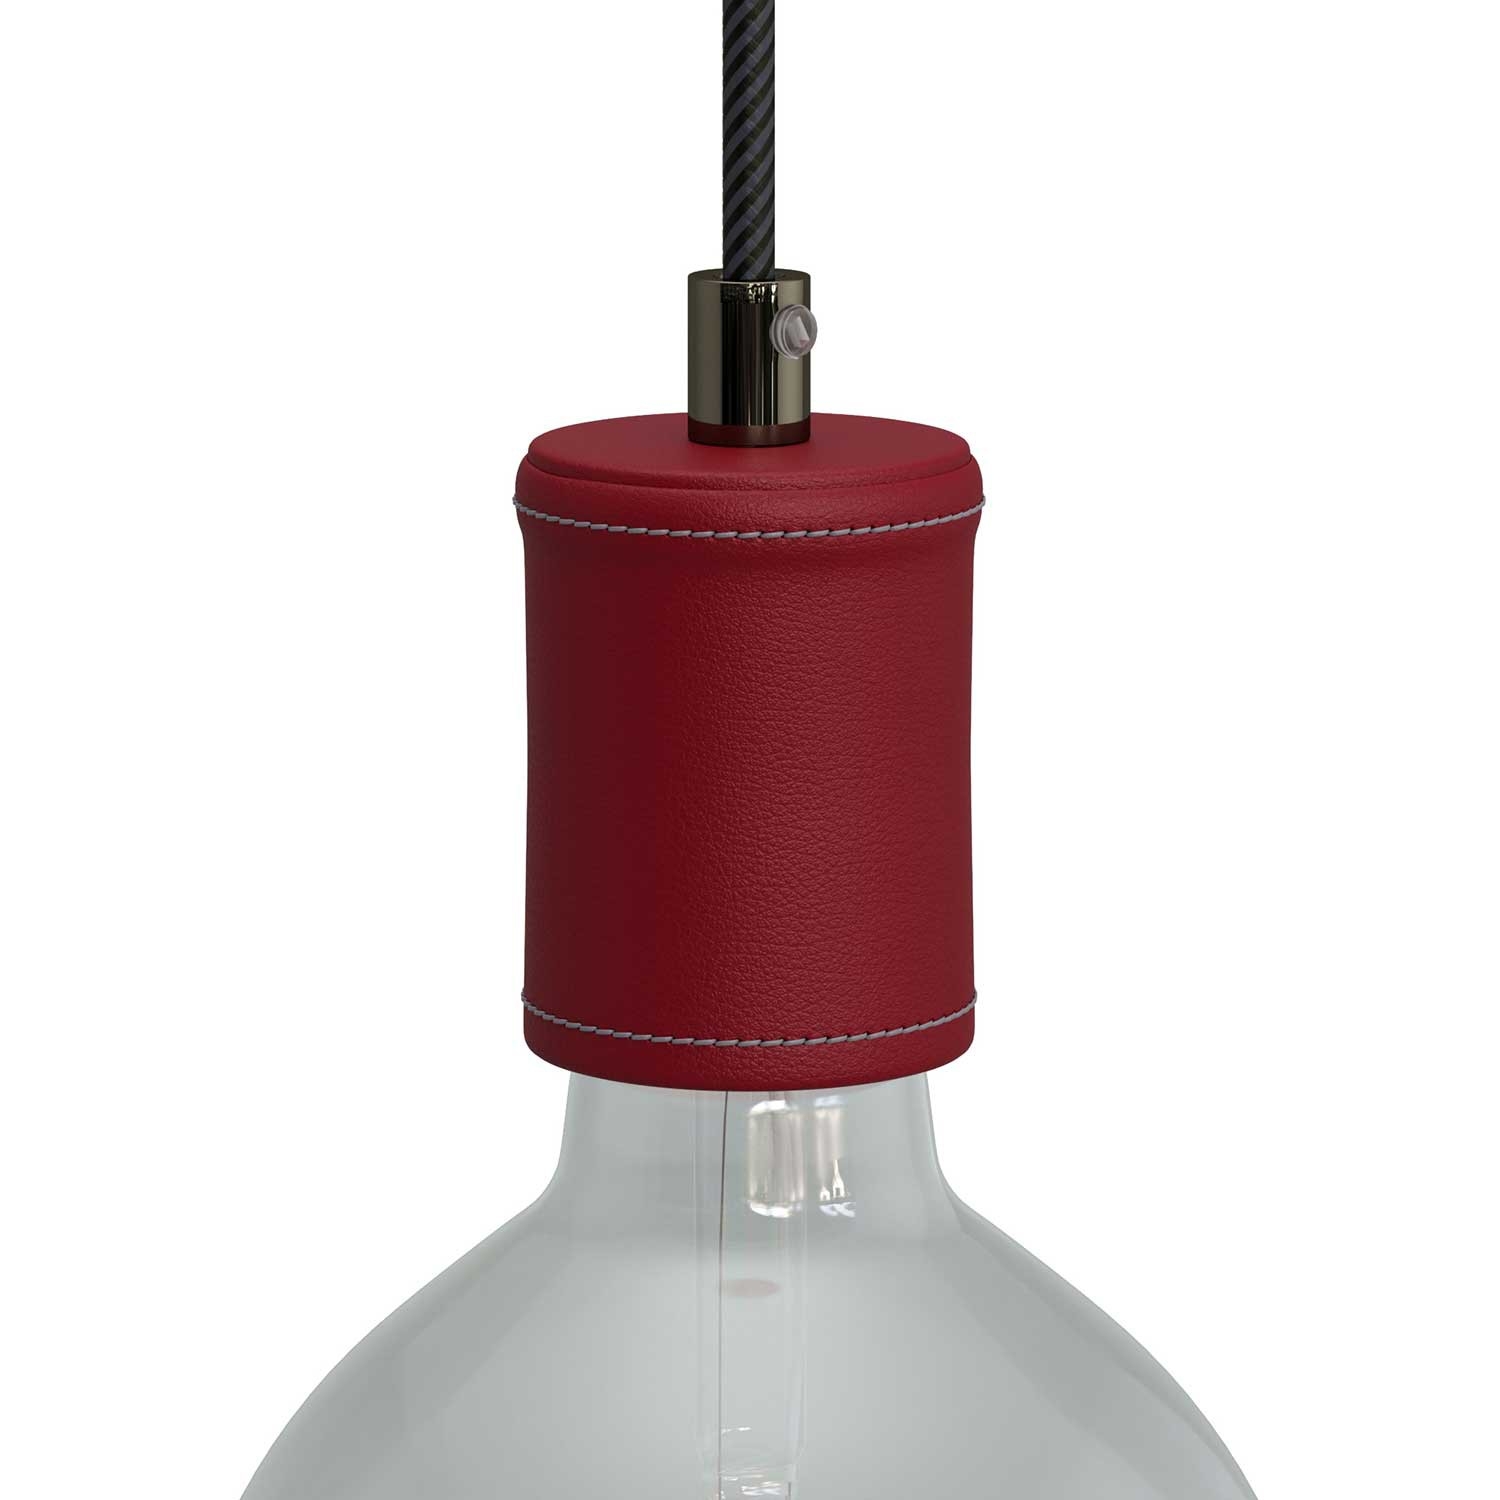 Leather light lamp holder E27